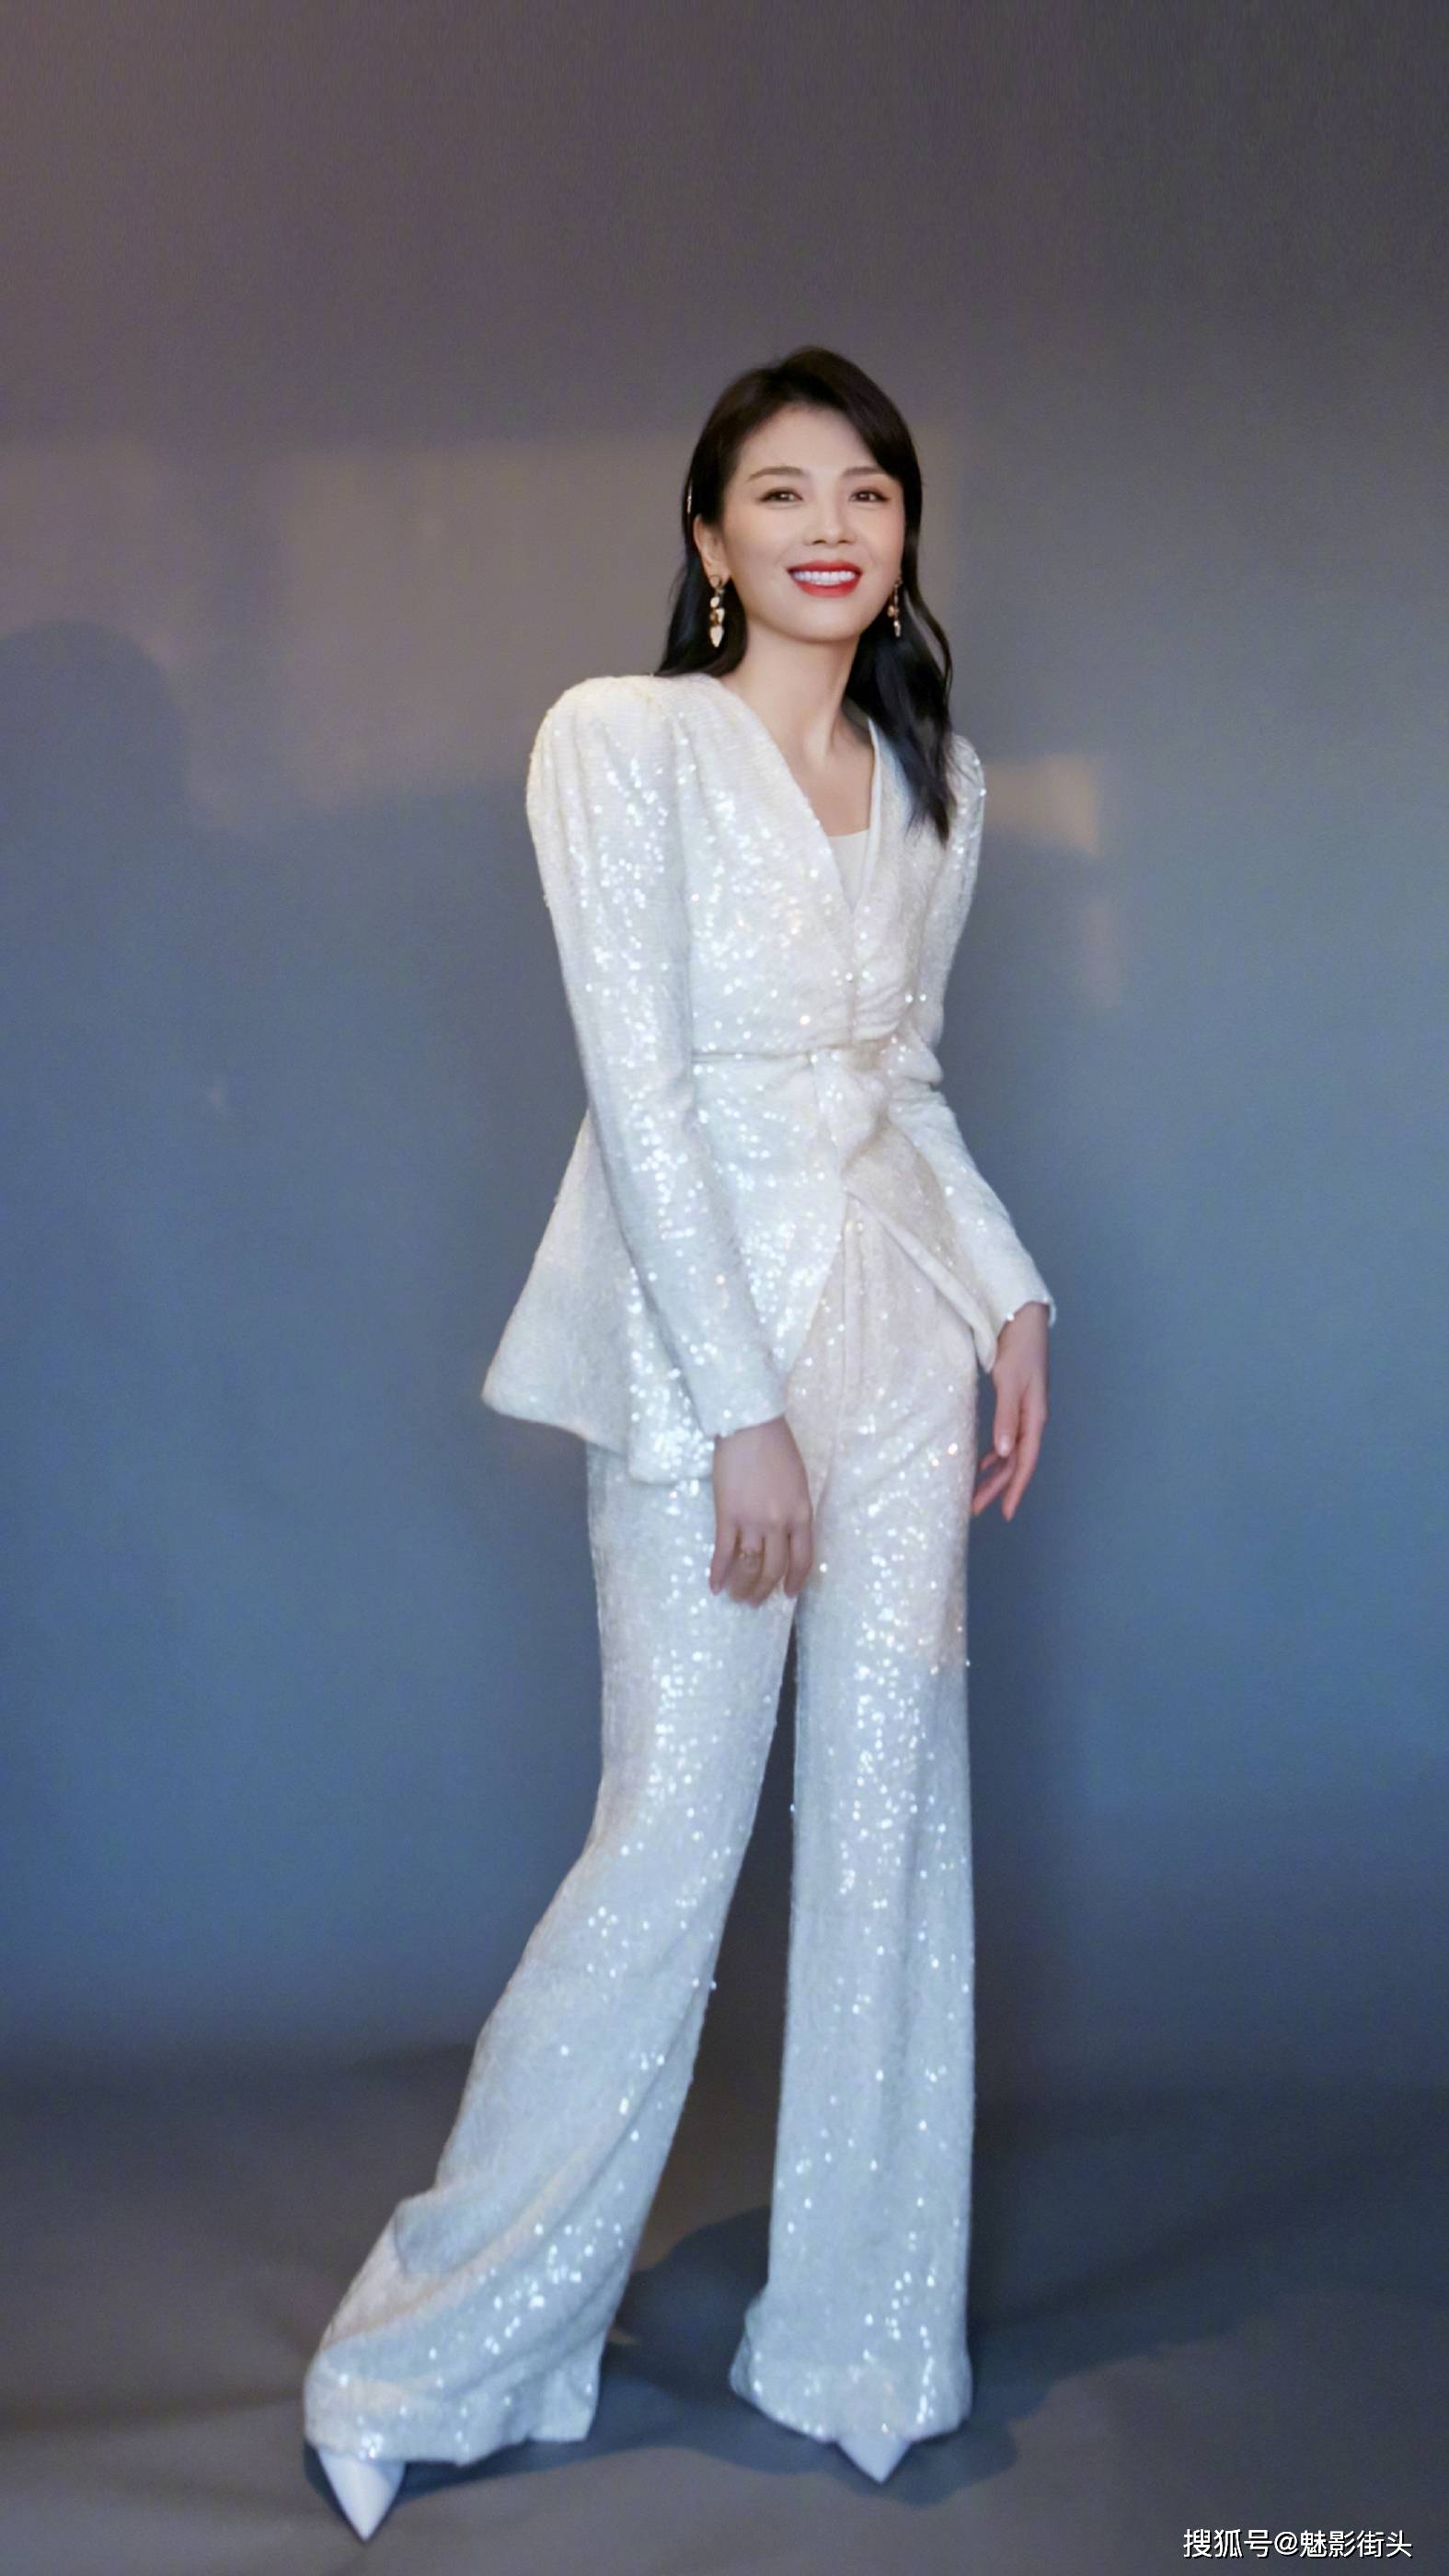 原创冻龄女神刘涛,一身白色亮片西服套装优雅又知性,美得惊艳